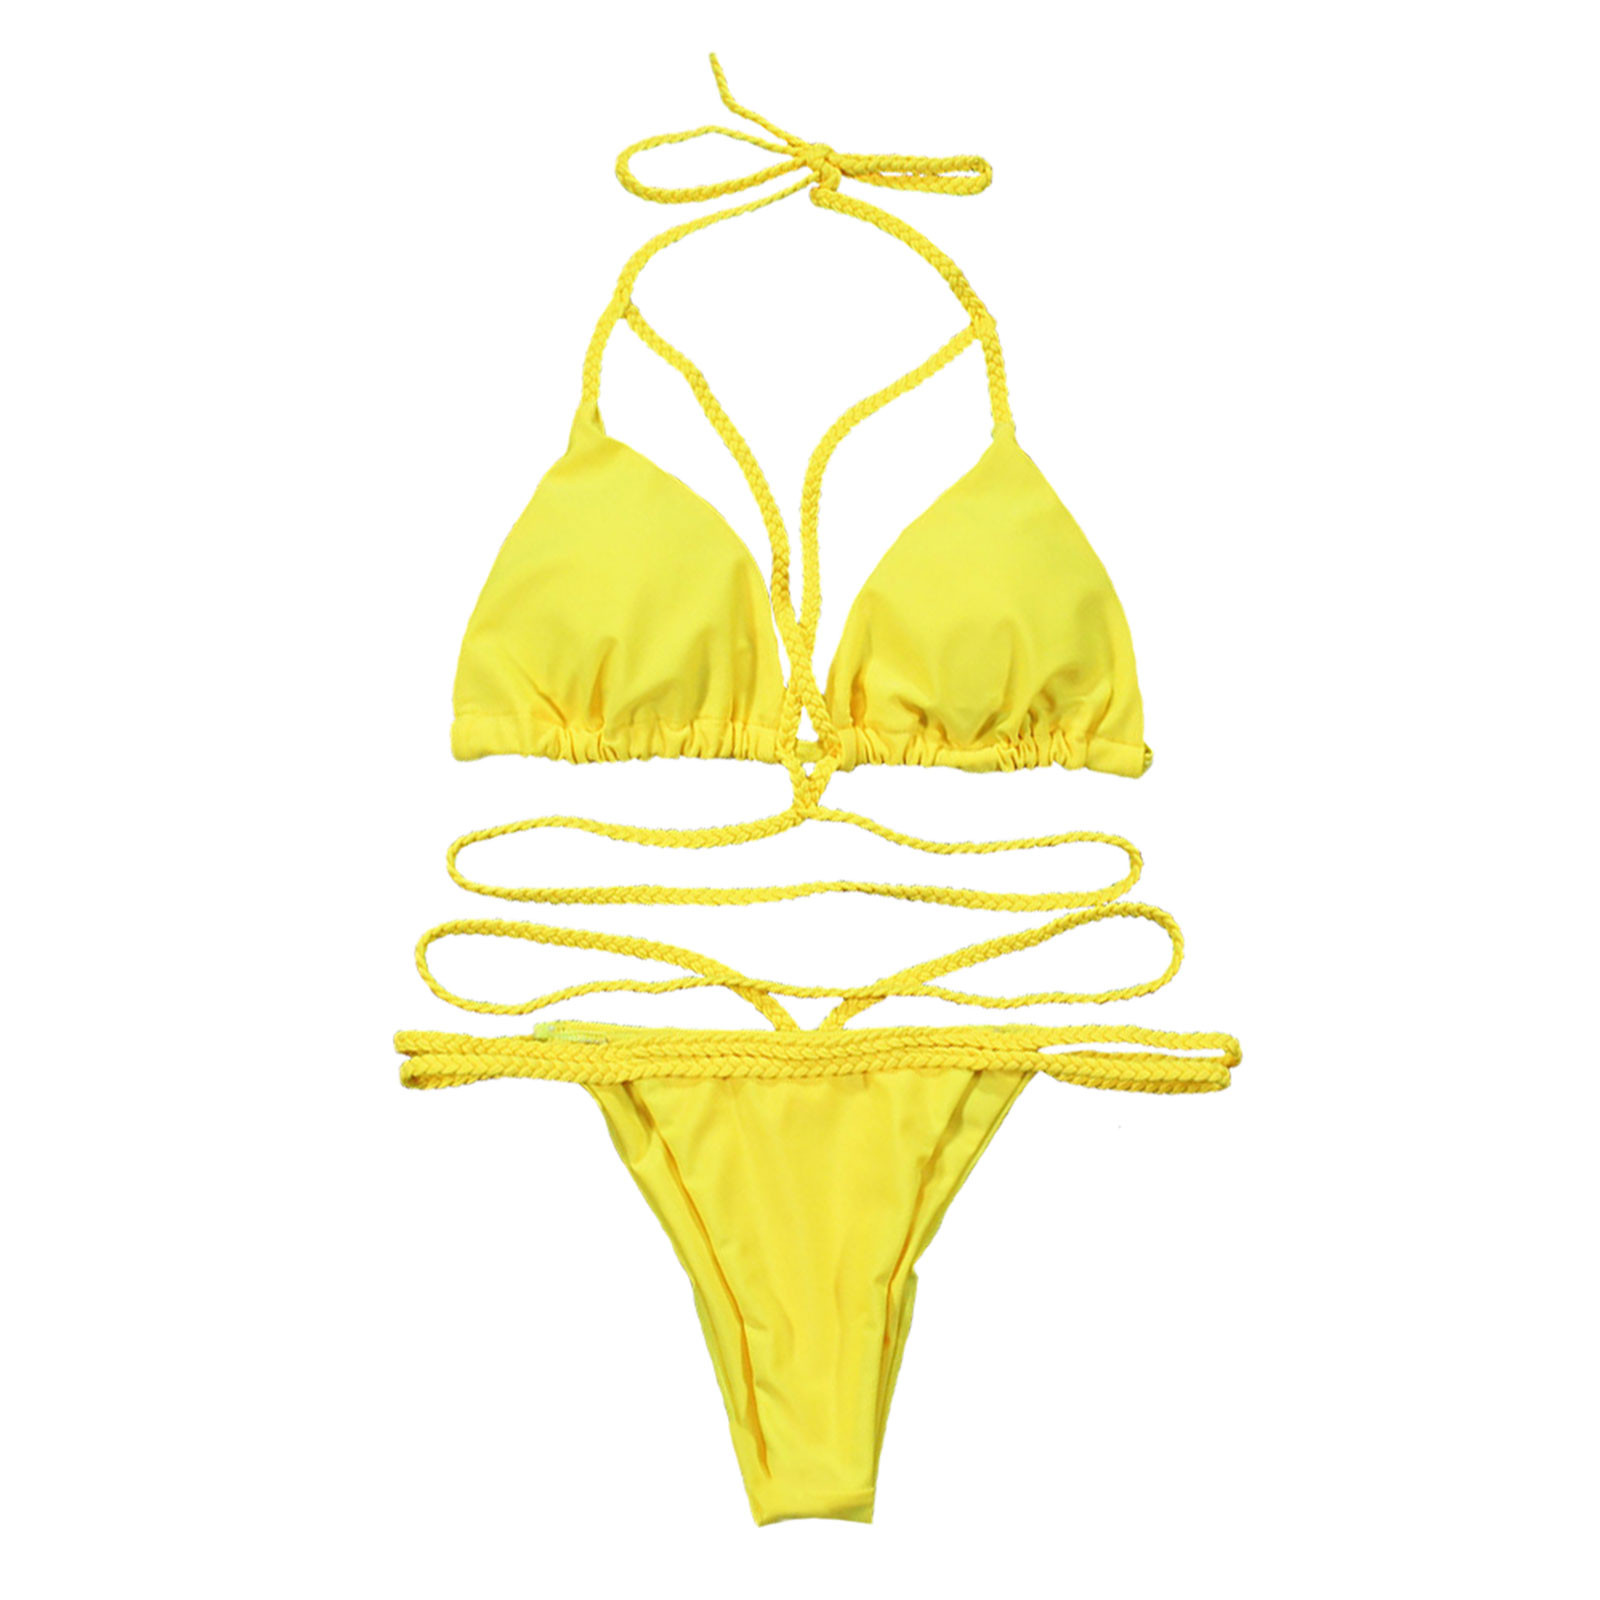 Koadzuia bikini sexy 2021 ชุดว่ายน้ำวันพีชหลากสีสำหรับผู้หญิงแฟชั่นเซ็กซี่